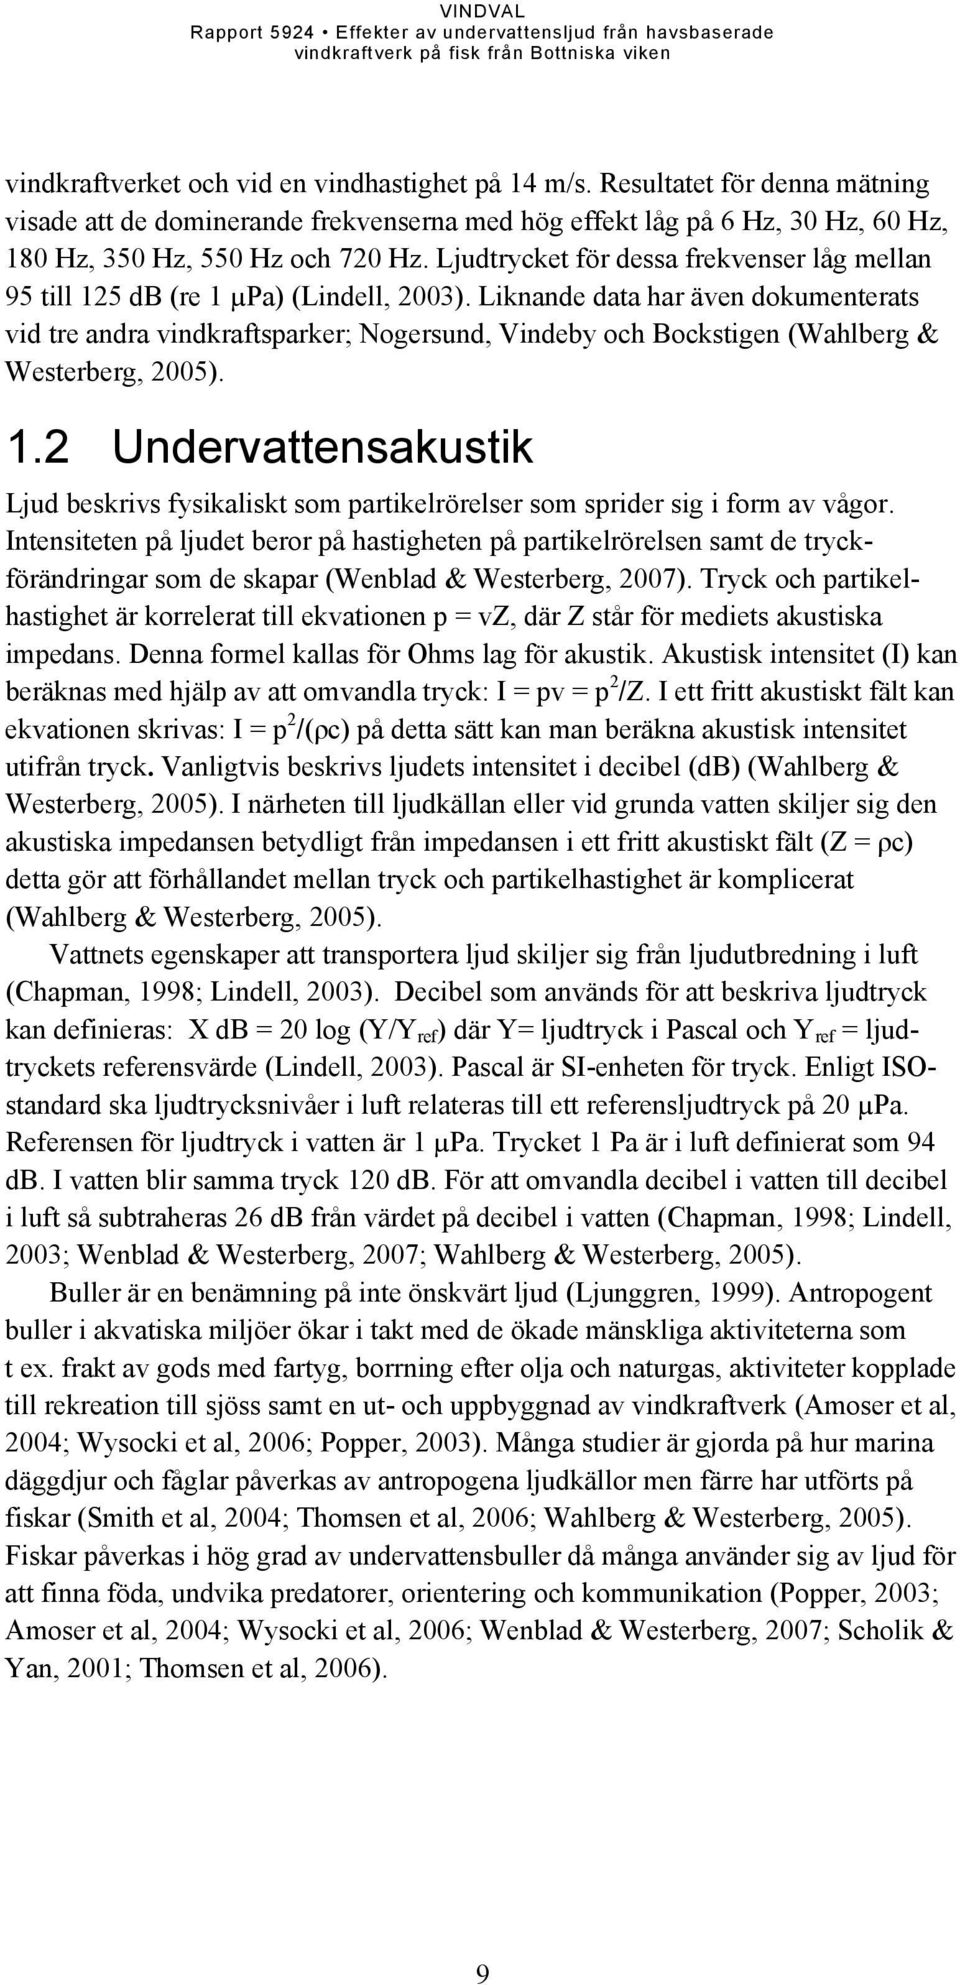 Liknande data har även dokumenterats vid tre andra vindkraftsparker; Nogersund, Vindeby och Bockstigen (Wahlberg & Westerberg, 2005). 1.